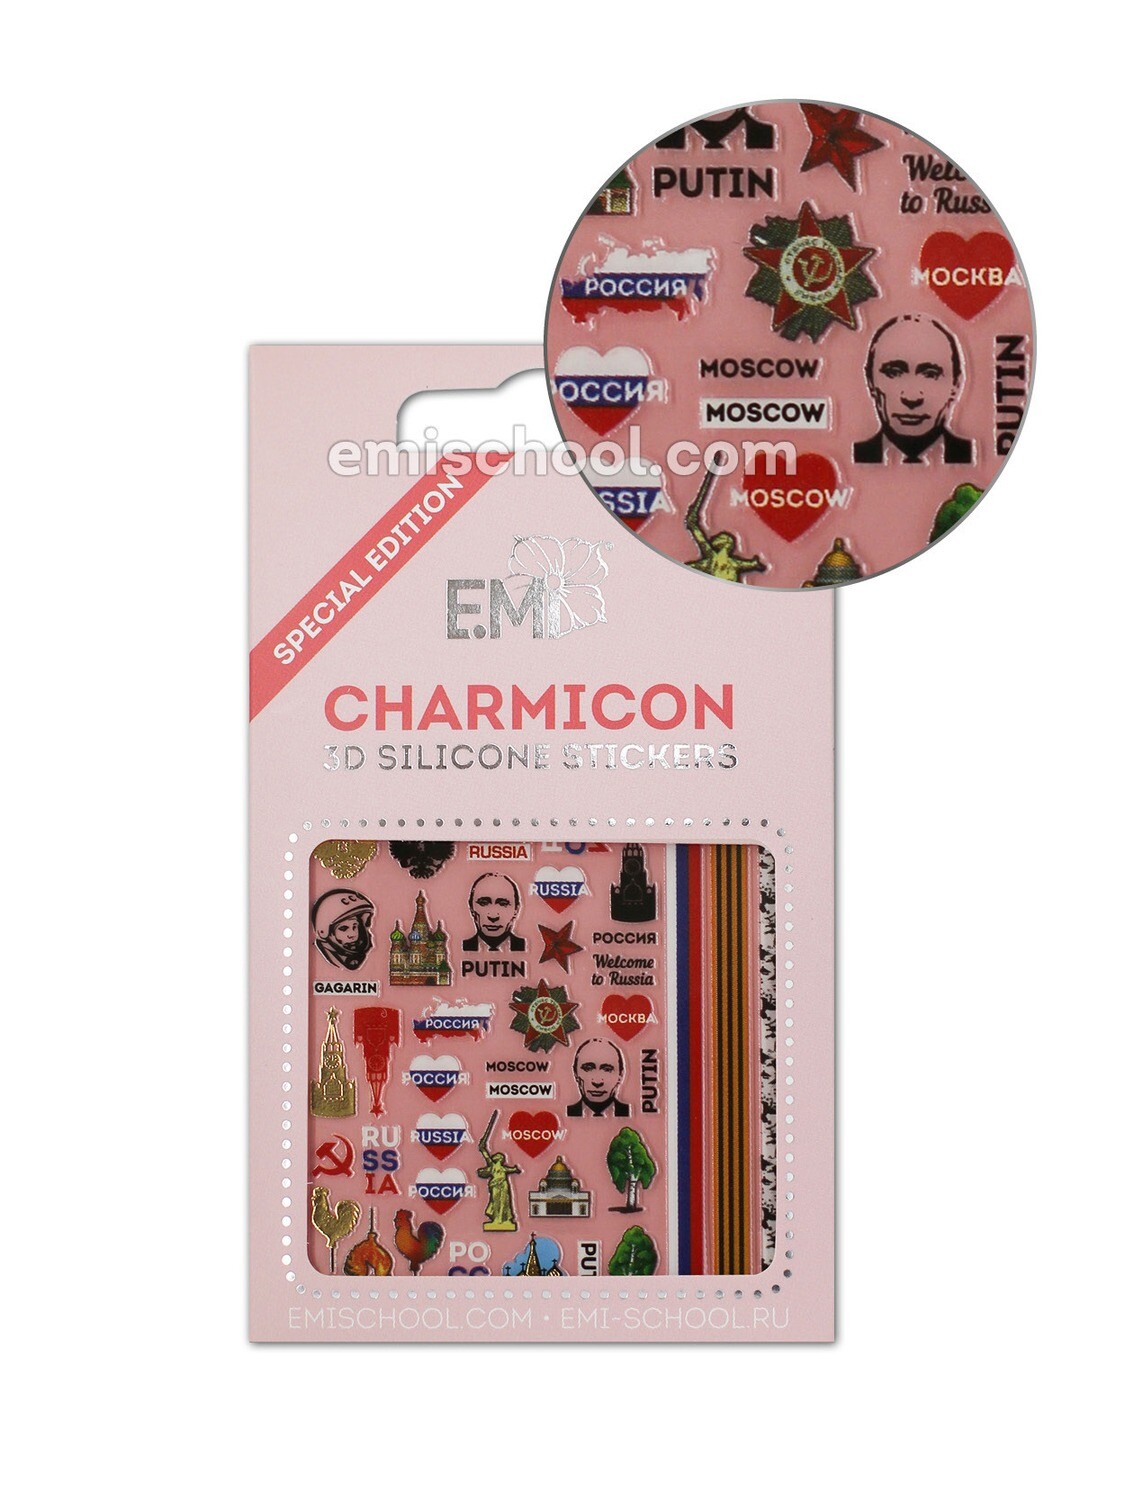 Charmicon 3D Silicone Stickers Russia 2